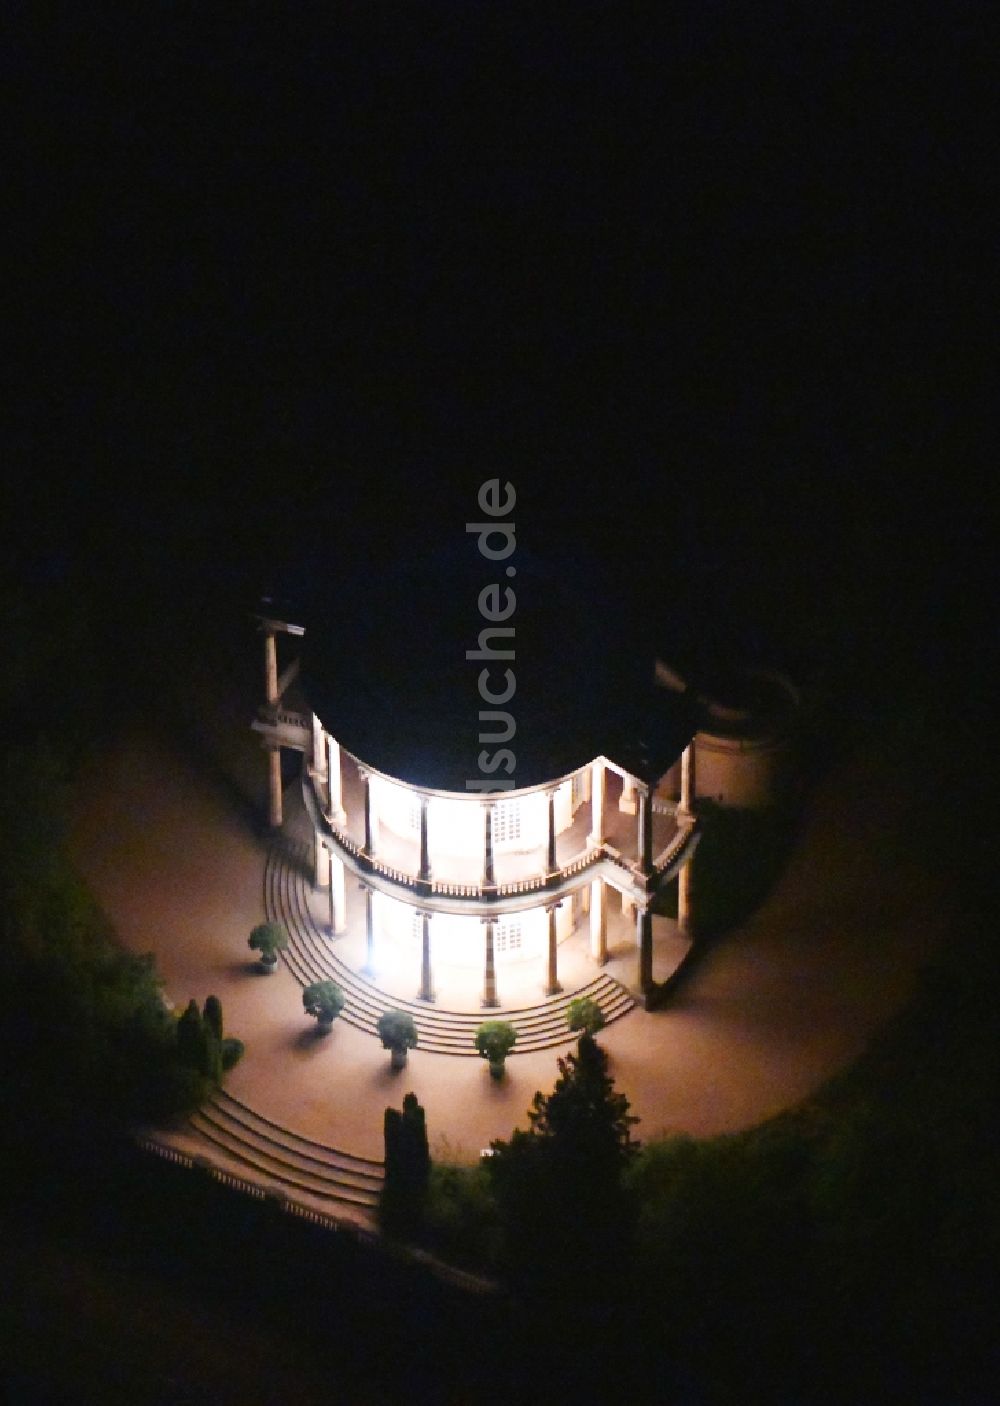 Potsdam bei Nacht von oben - Nachtluftbild anläßlich der Potsdamer Schlösser Nacht 2019 vom Belvedere auf dem Klausberg in Potsdam im Bundesland Brandenburg, Deutschland